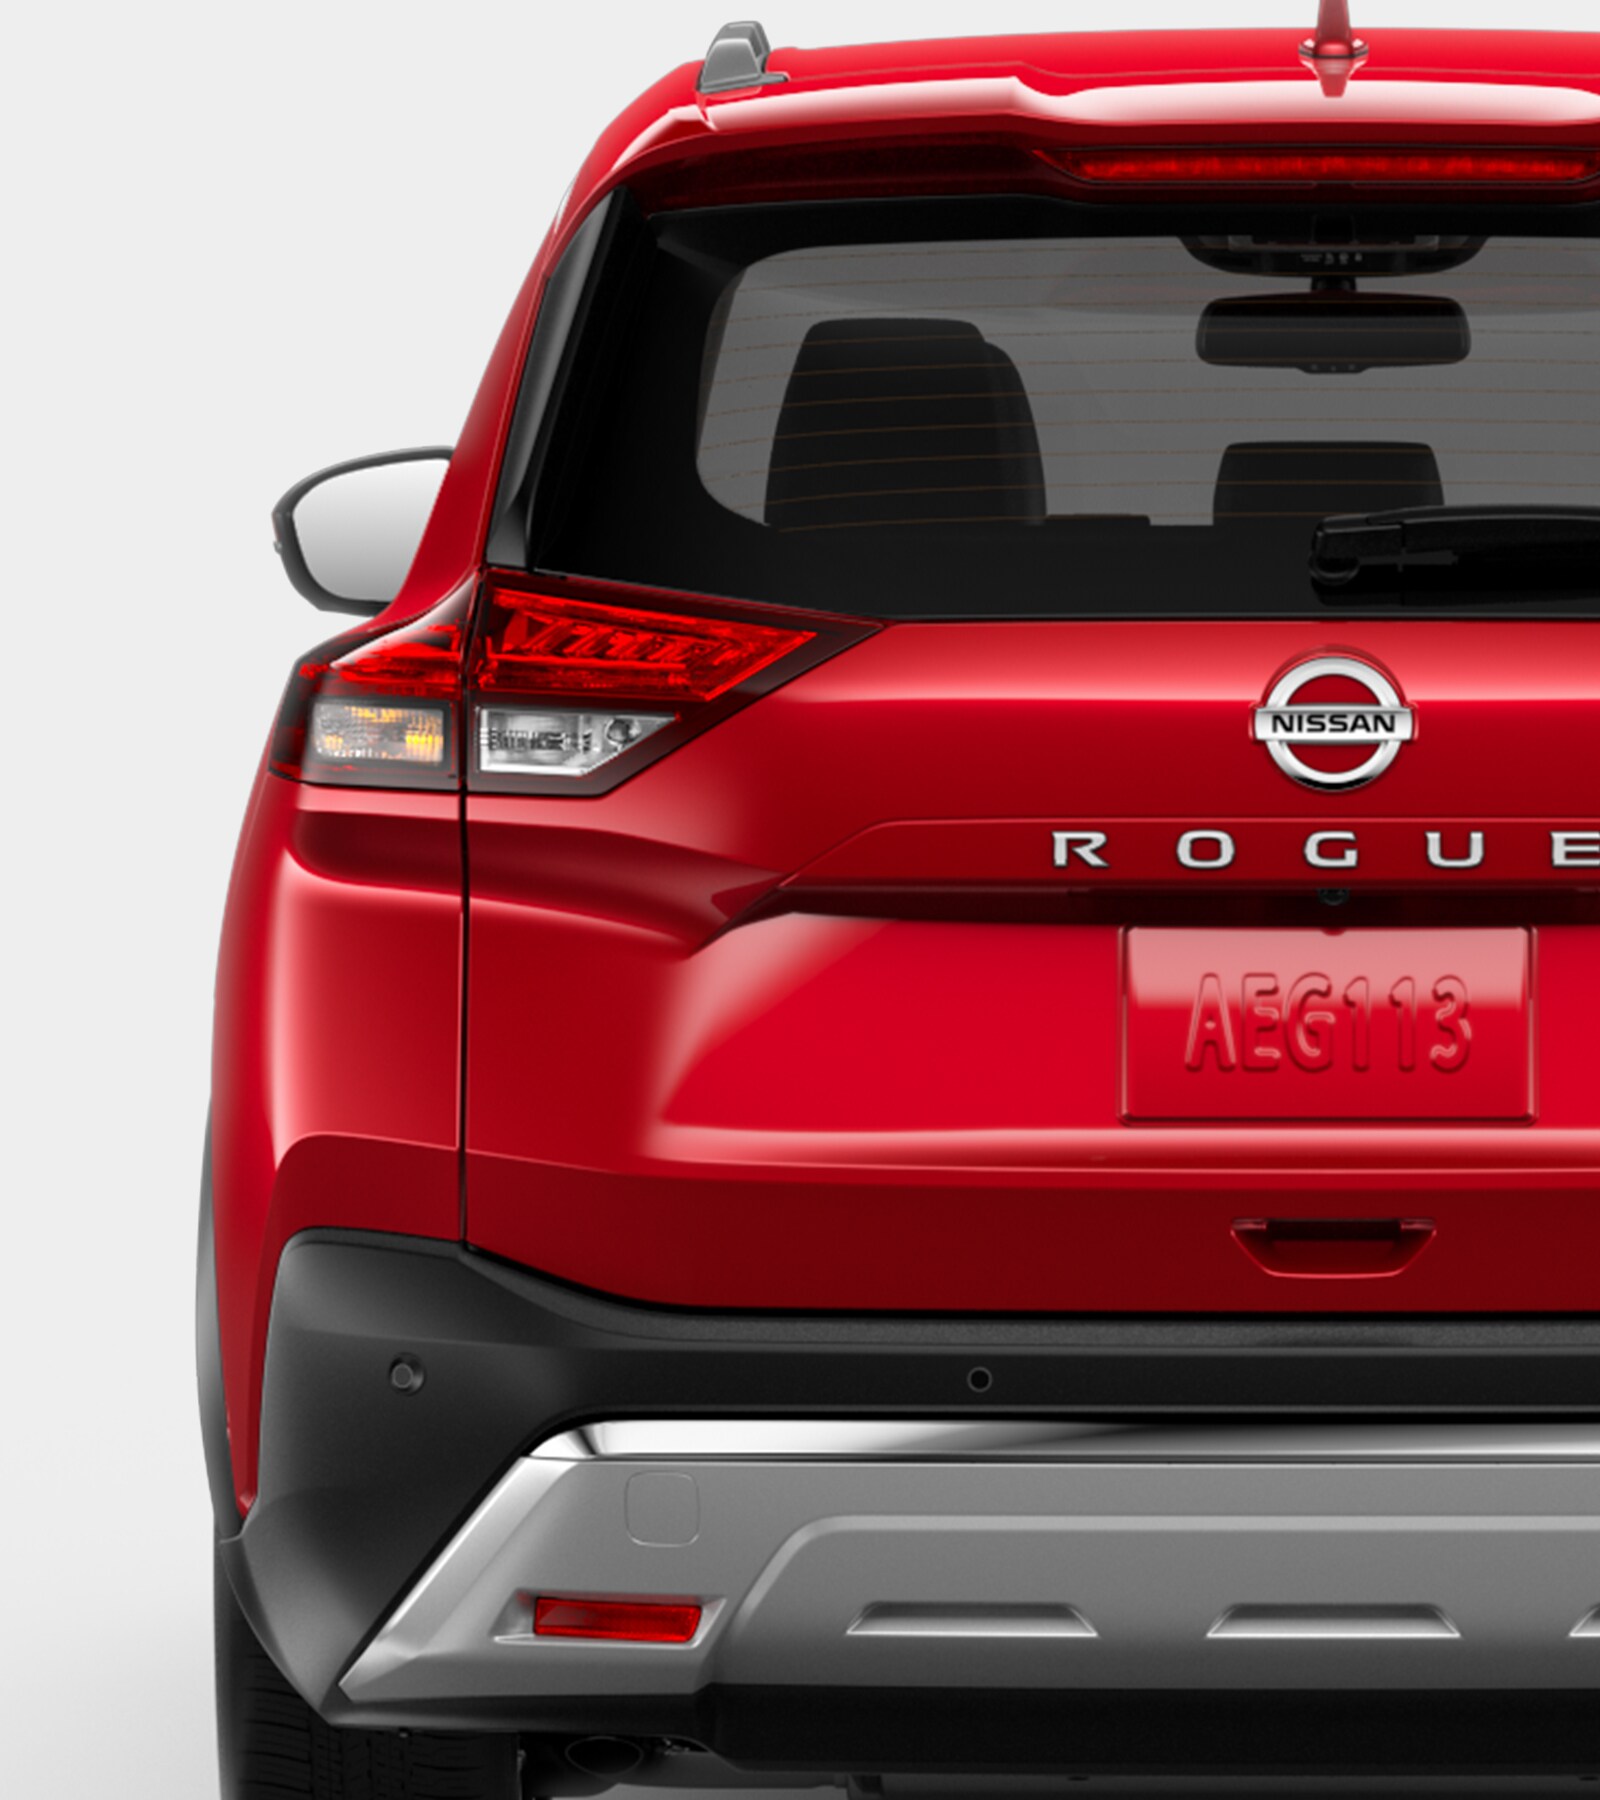 2021 Nissan Rogue rear badge